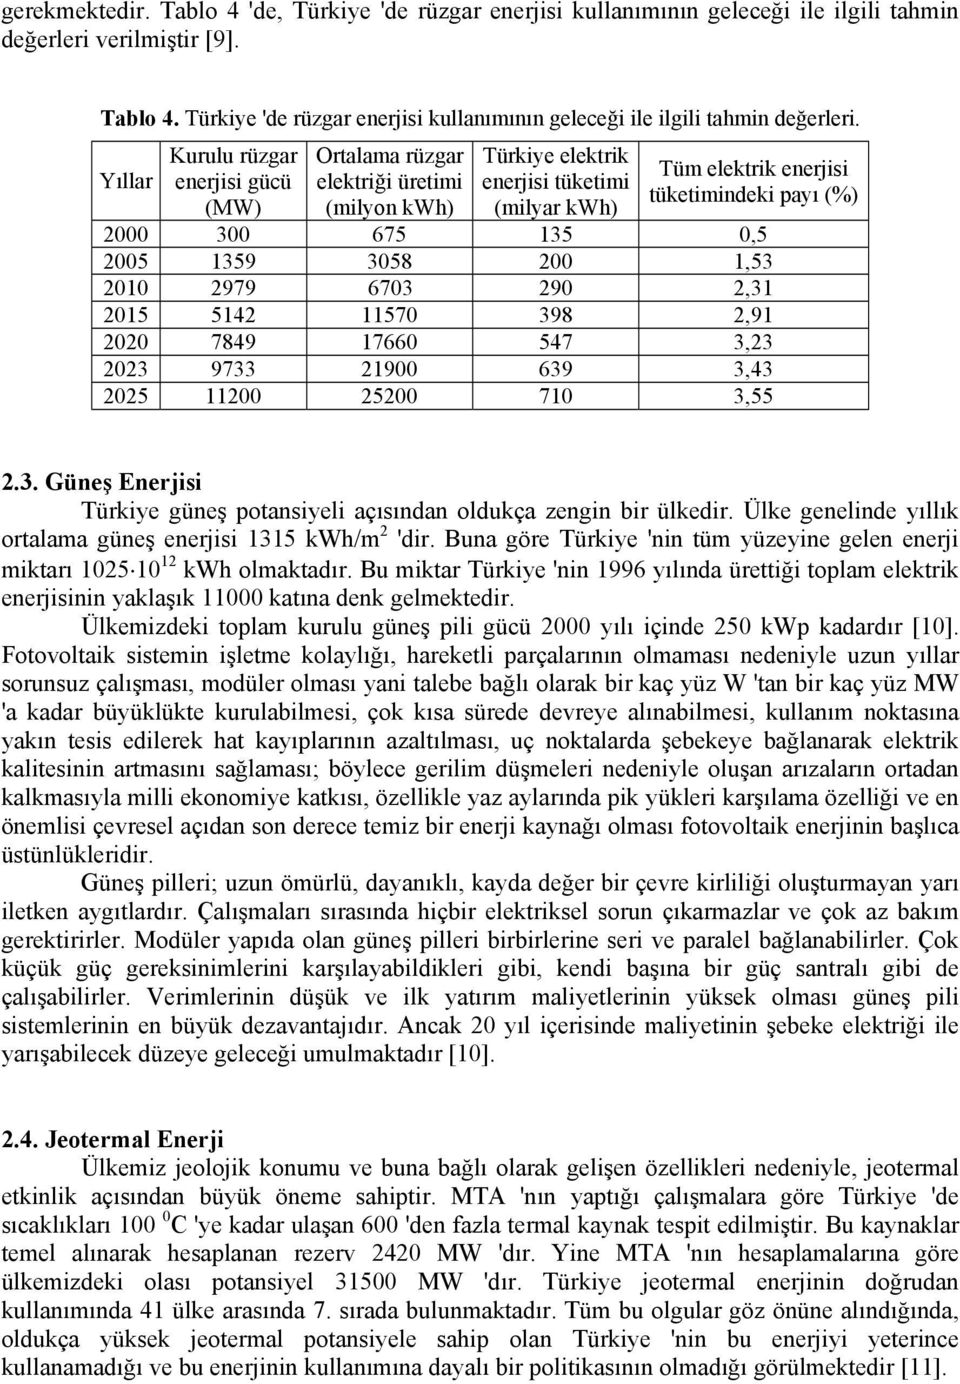 Yıllar Kurulu rüzgar enerjisi gücü (MW) Ortalama rüzgar elektriği üretimi (milyon kwh) Türkiye elektrik enerjisi tüketimi (milyar kwh) Tüm elektrik enerjisi tüketimindeki payı (%) 2000 300 675 135